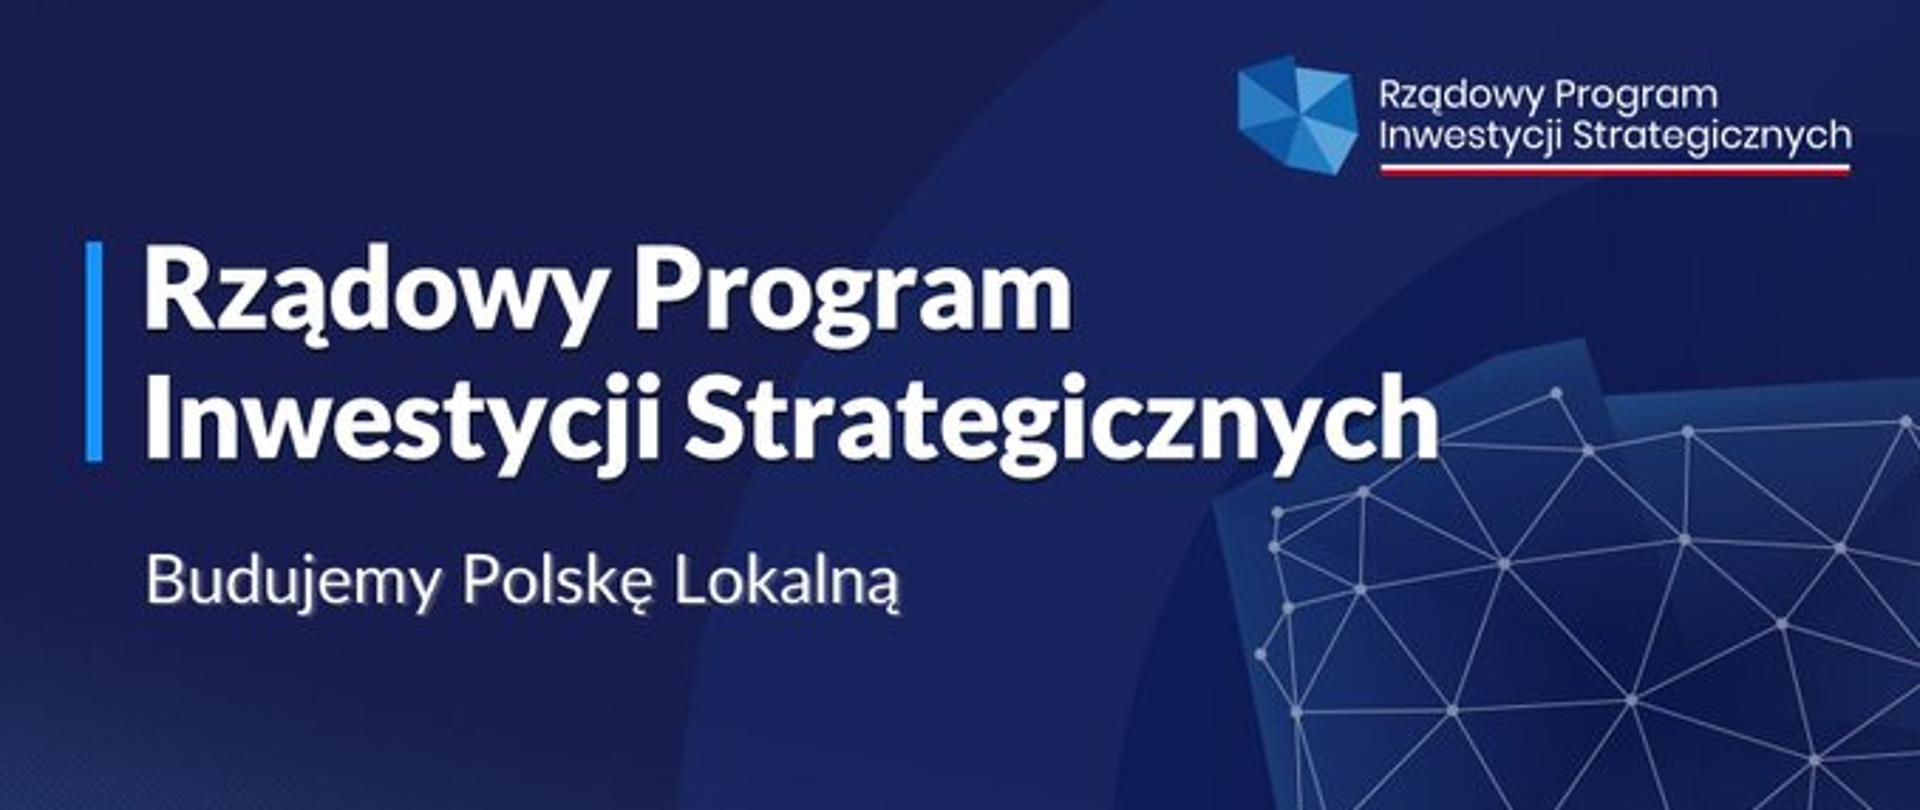 Grafika: napis Rządowy Program Inwestycji Strategicznych Budujemy Polskę Lokalną na niebieskim tle